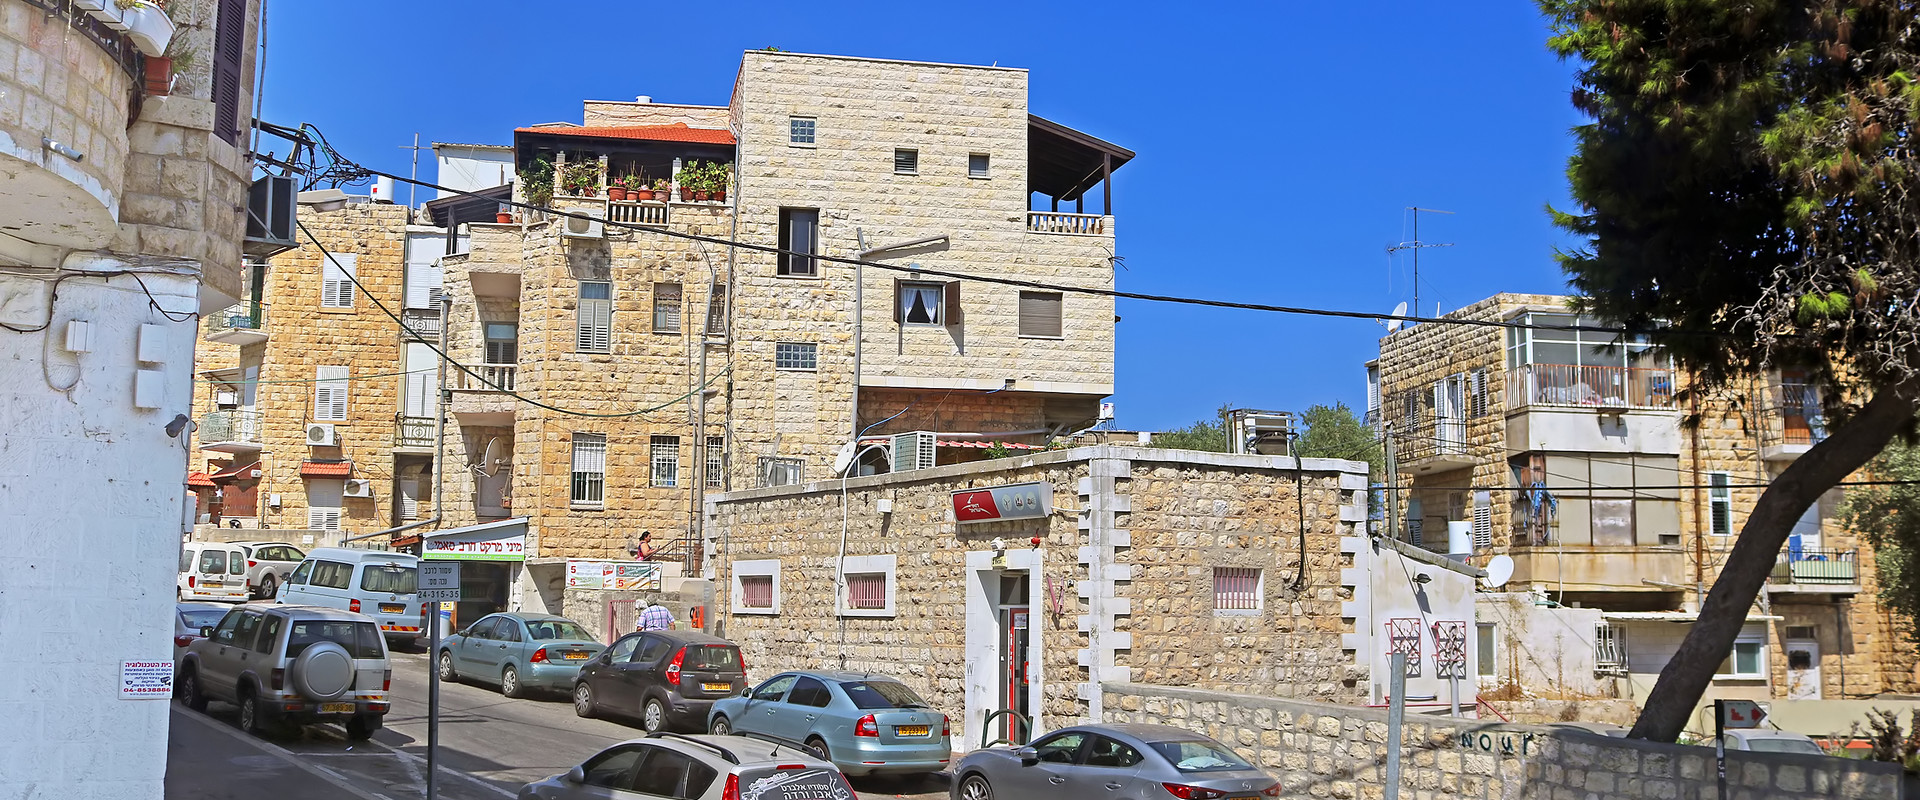 שכונת הדר בחיפה (צילום: Gelia, shutterstock)